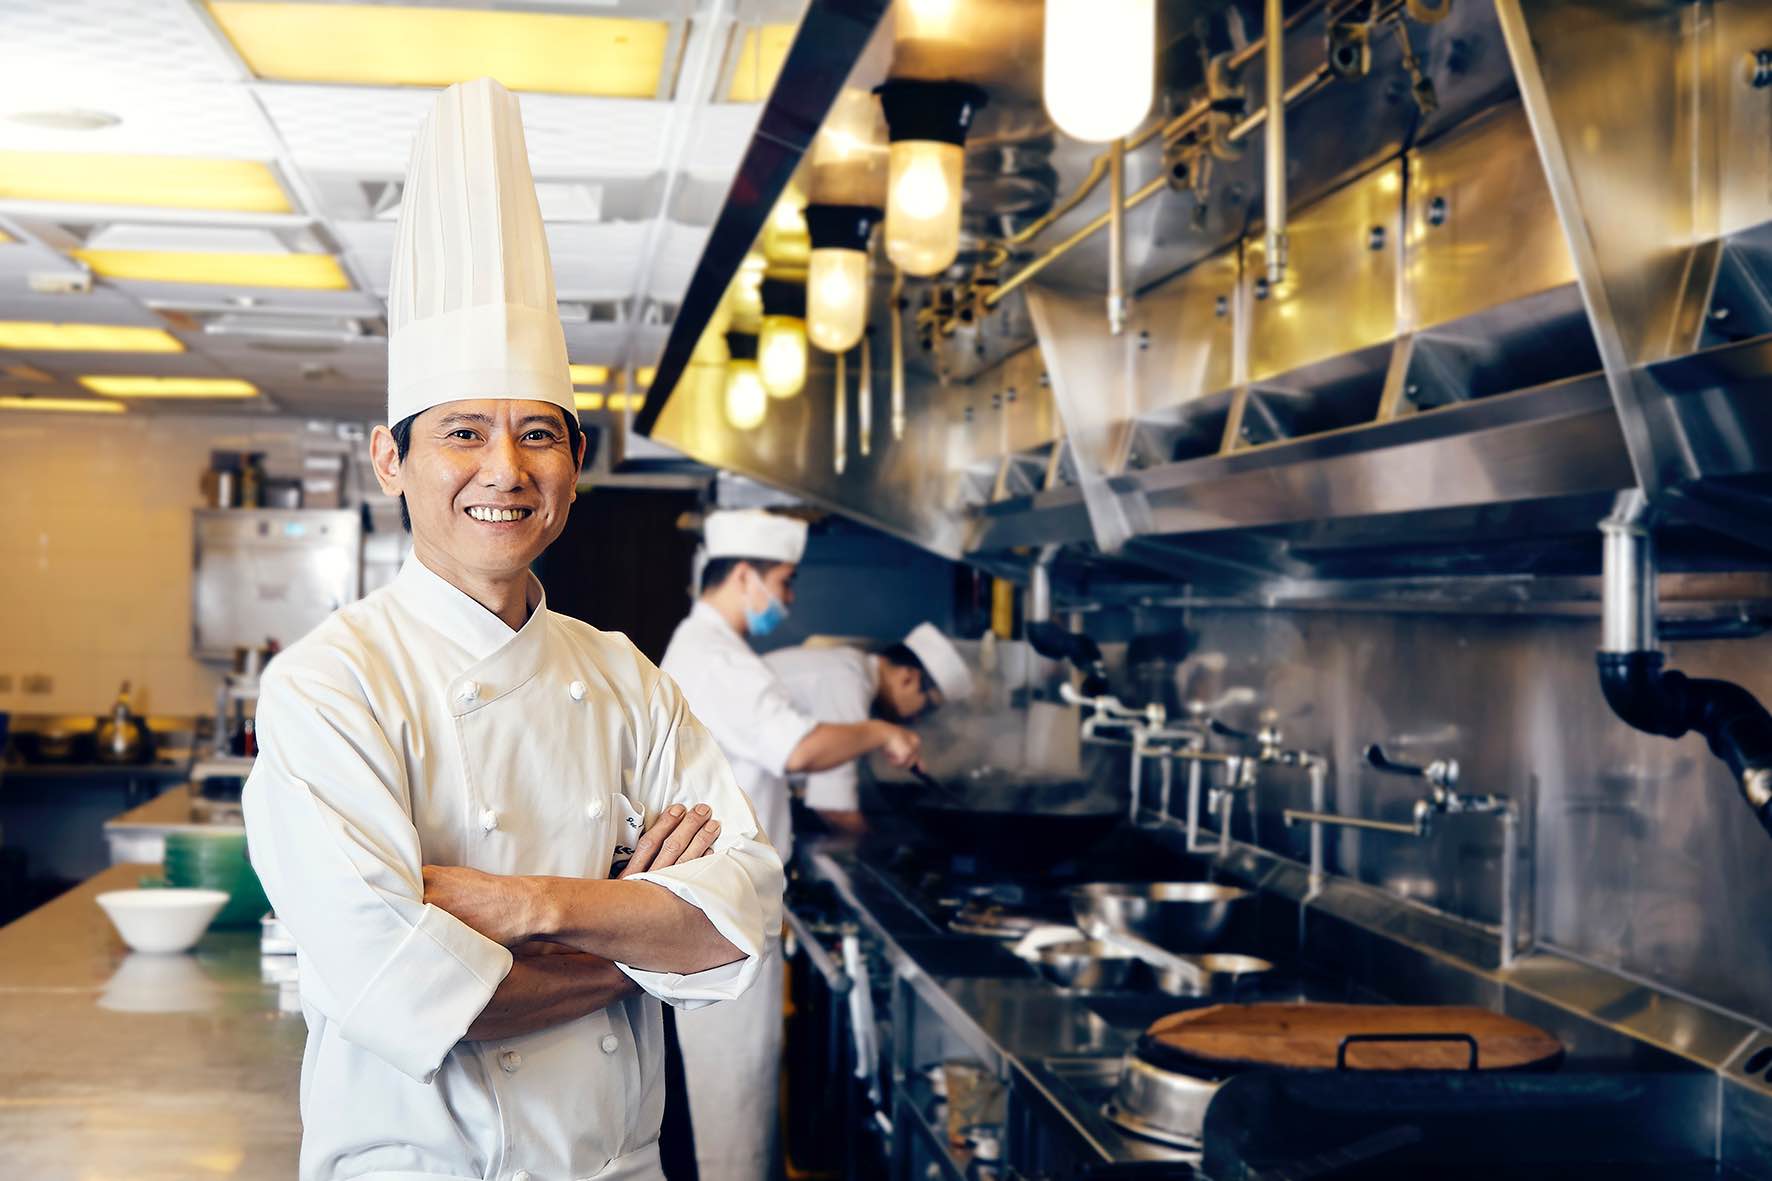 請客樓主廚林菊偉擁有多年廚藝資歷，廚藝精湛。